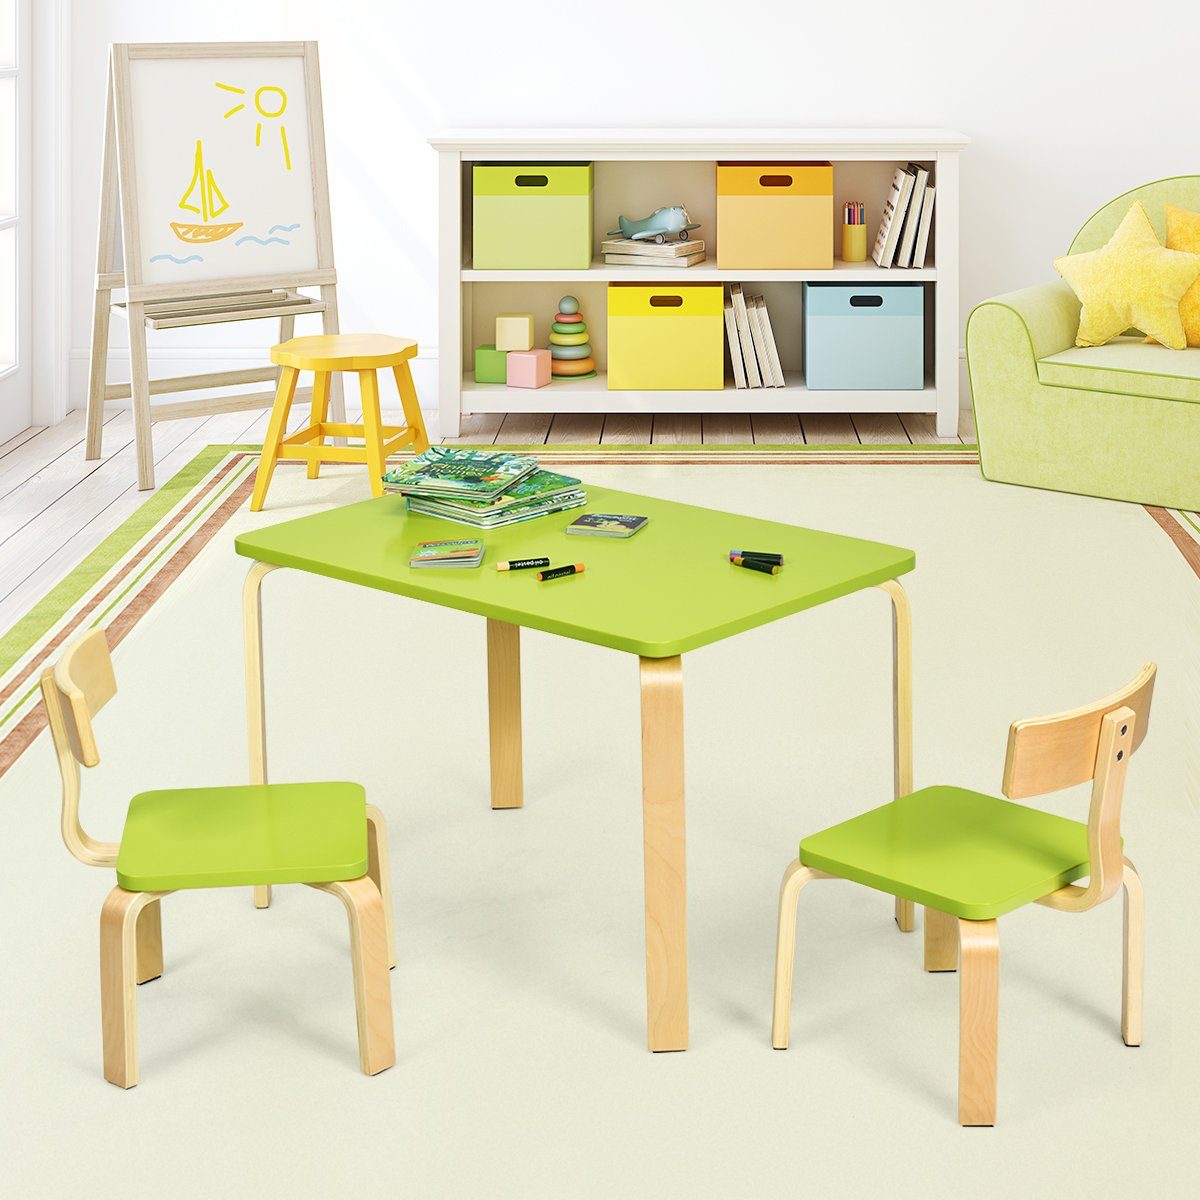 Holz 2 Kindersitzgruppe, Kinderstühlen, Kindertisch Grün COSTWAY mit